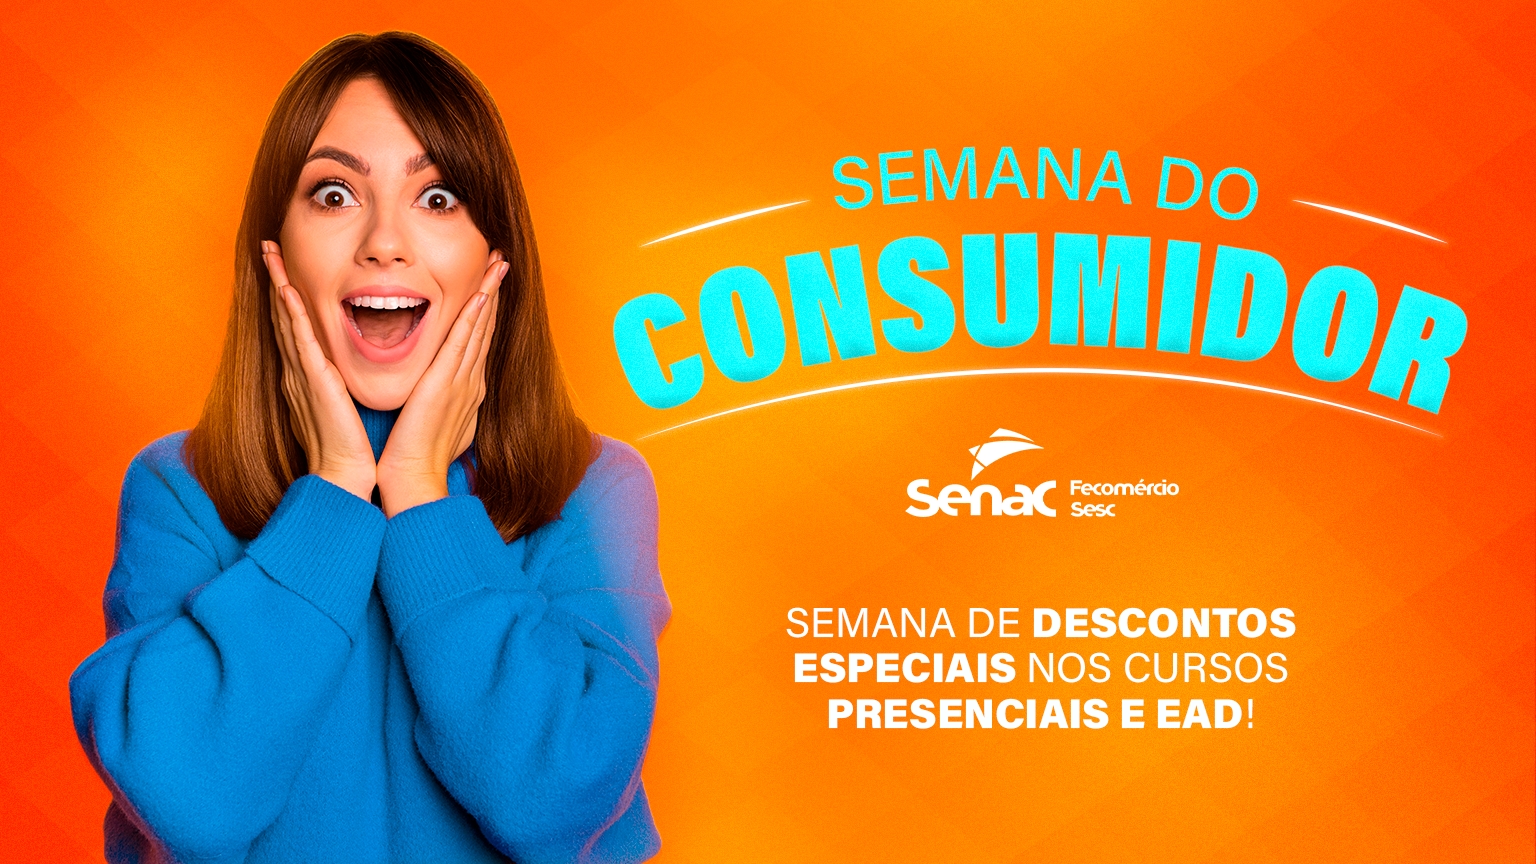 Semana do Consumidor: Senac-ES oferece descontos especiais em cursos. Saiba mais!